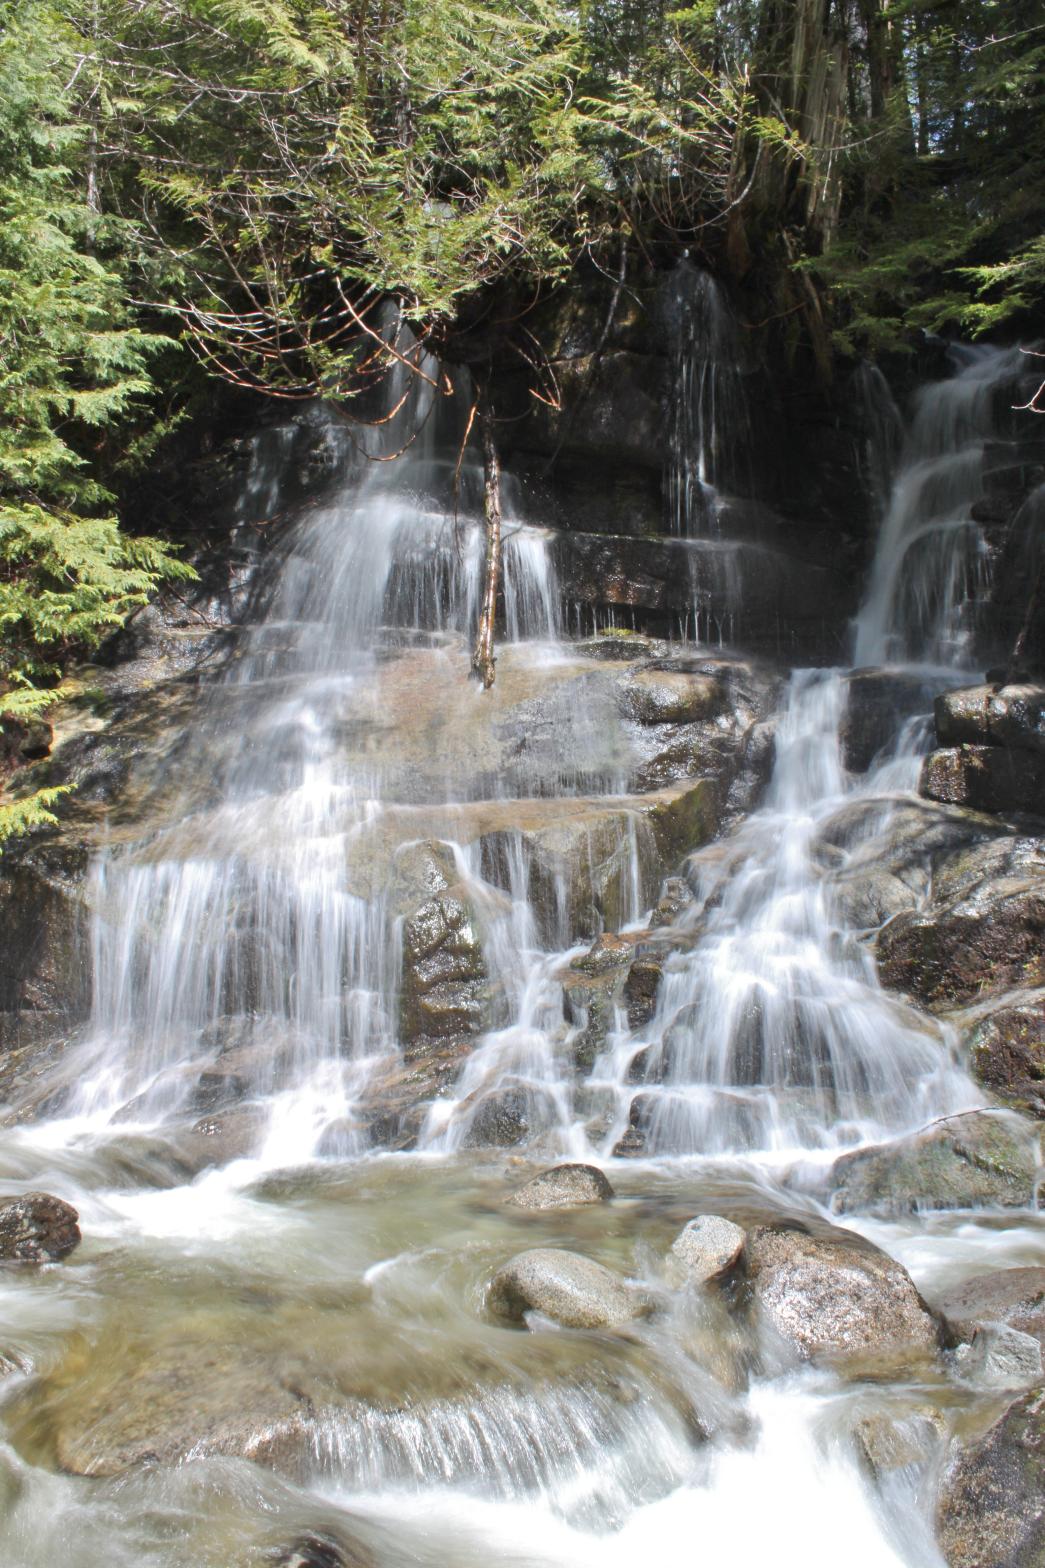 Seasonal waterfall just downstream